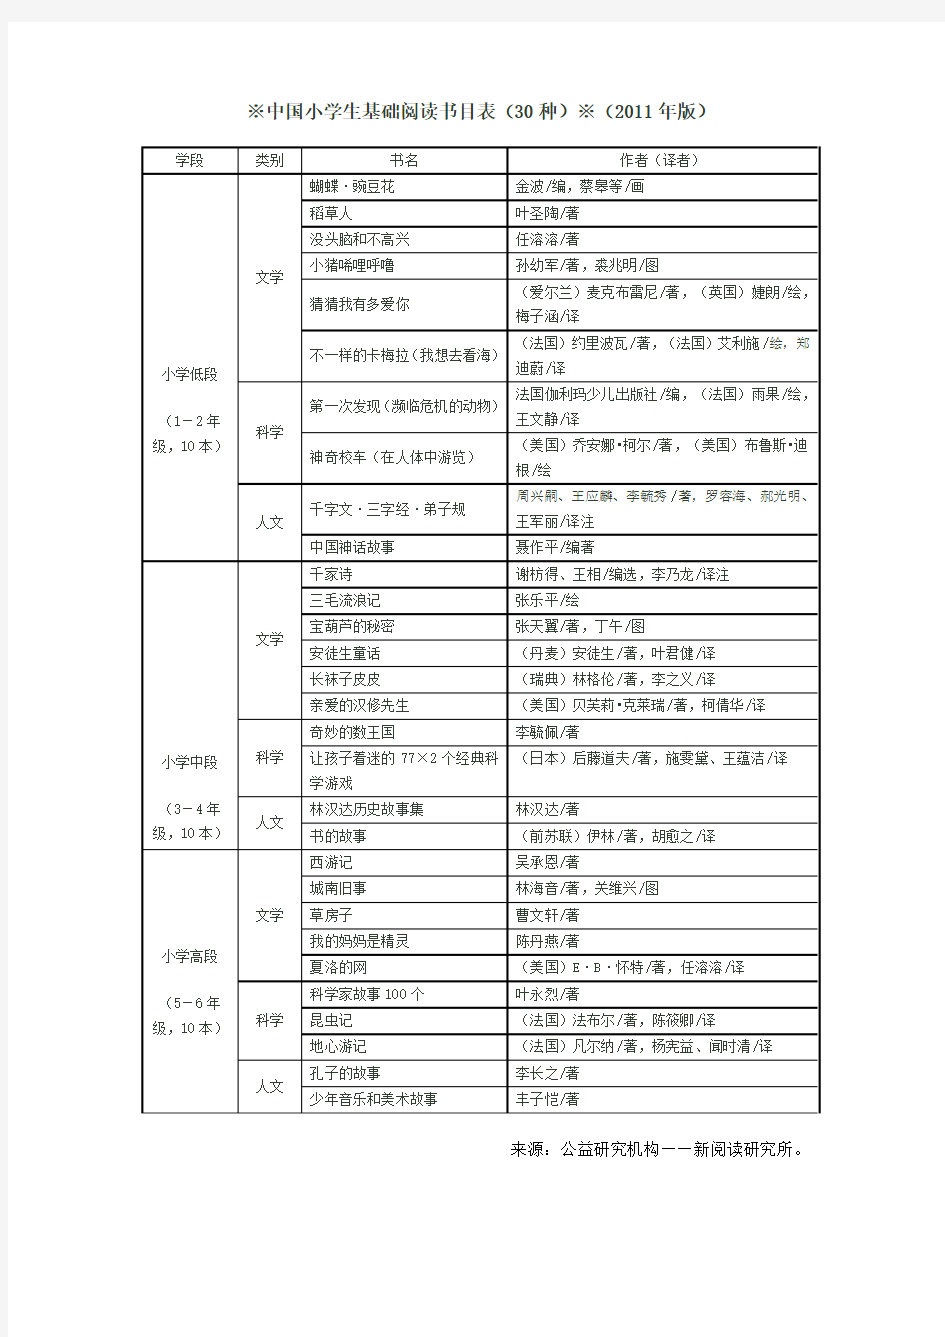 中国小学生基础阅读书目表(30种)